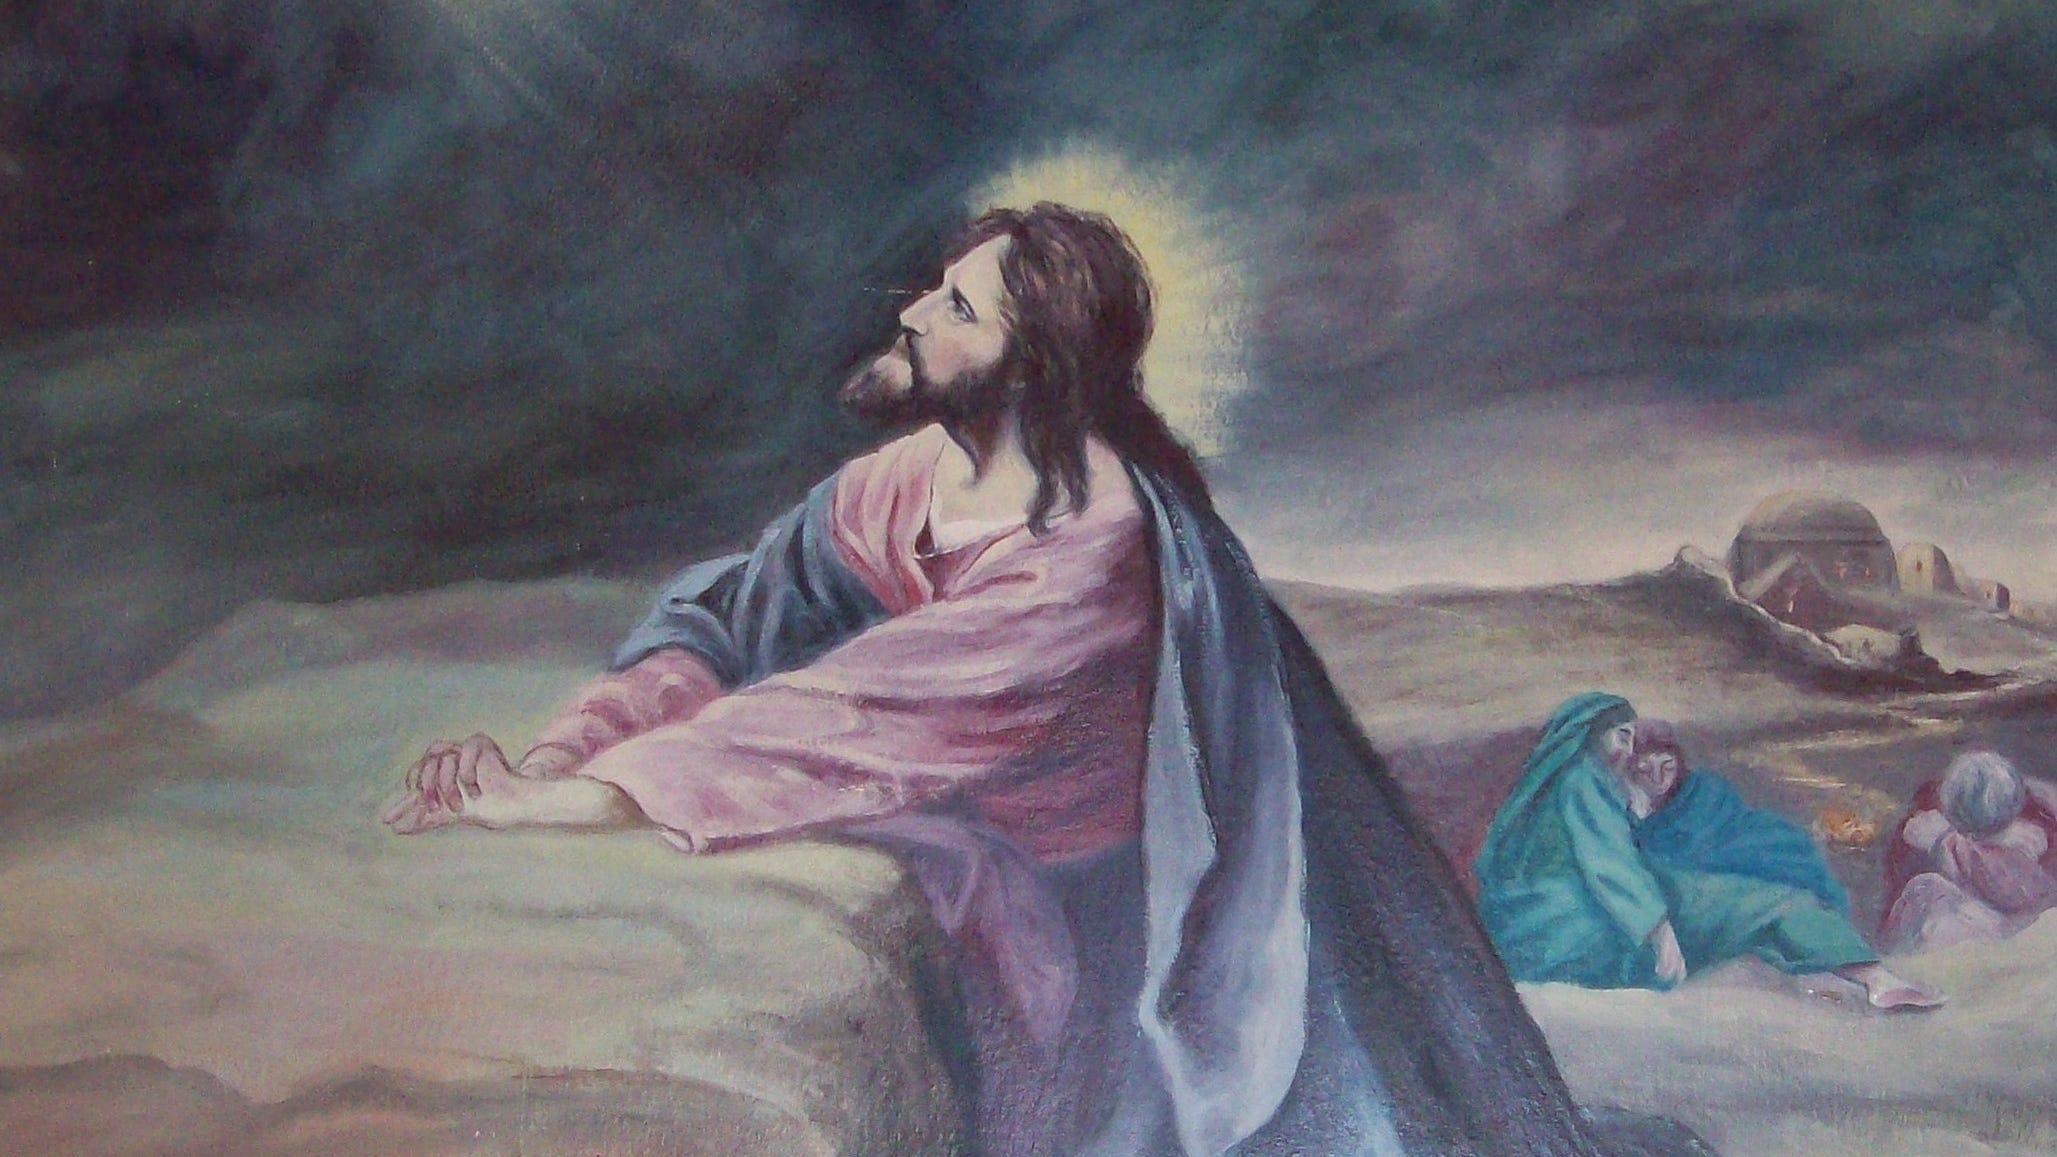 Hình ảnh Chúa Giêsu đang cầu nguyện Full HD